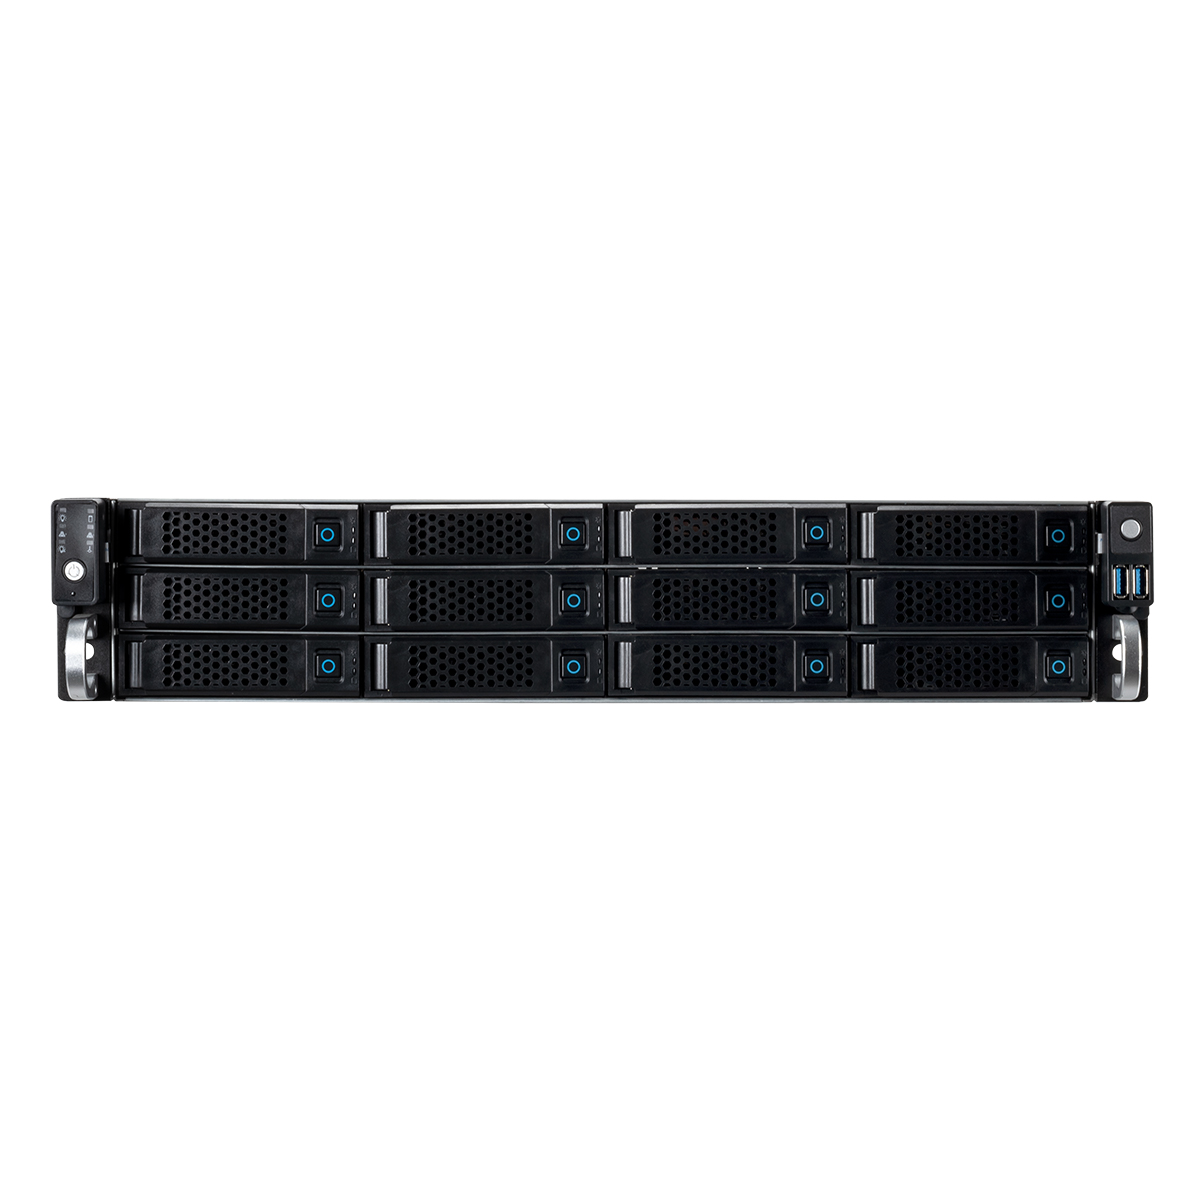 Unykach Server 2U Rack 12 Bays Hot Swap - Tailles de disque prises en charge 2,5", 3,5" - Cartes mères compatibles EEB, CEB, ATX, MicroATX - USB-A 2.0